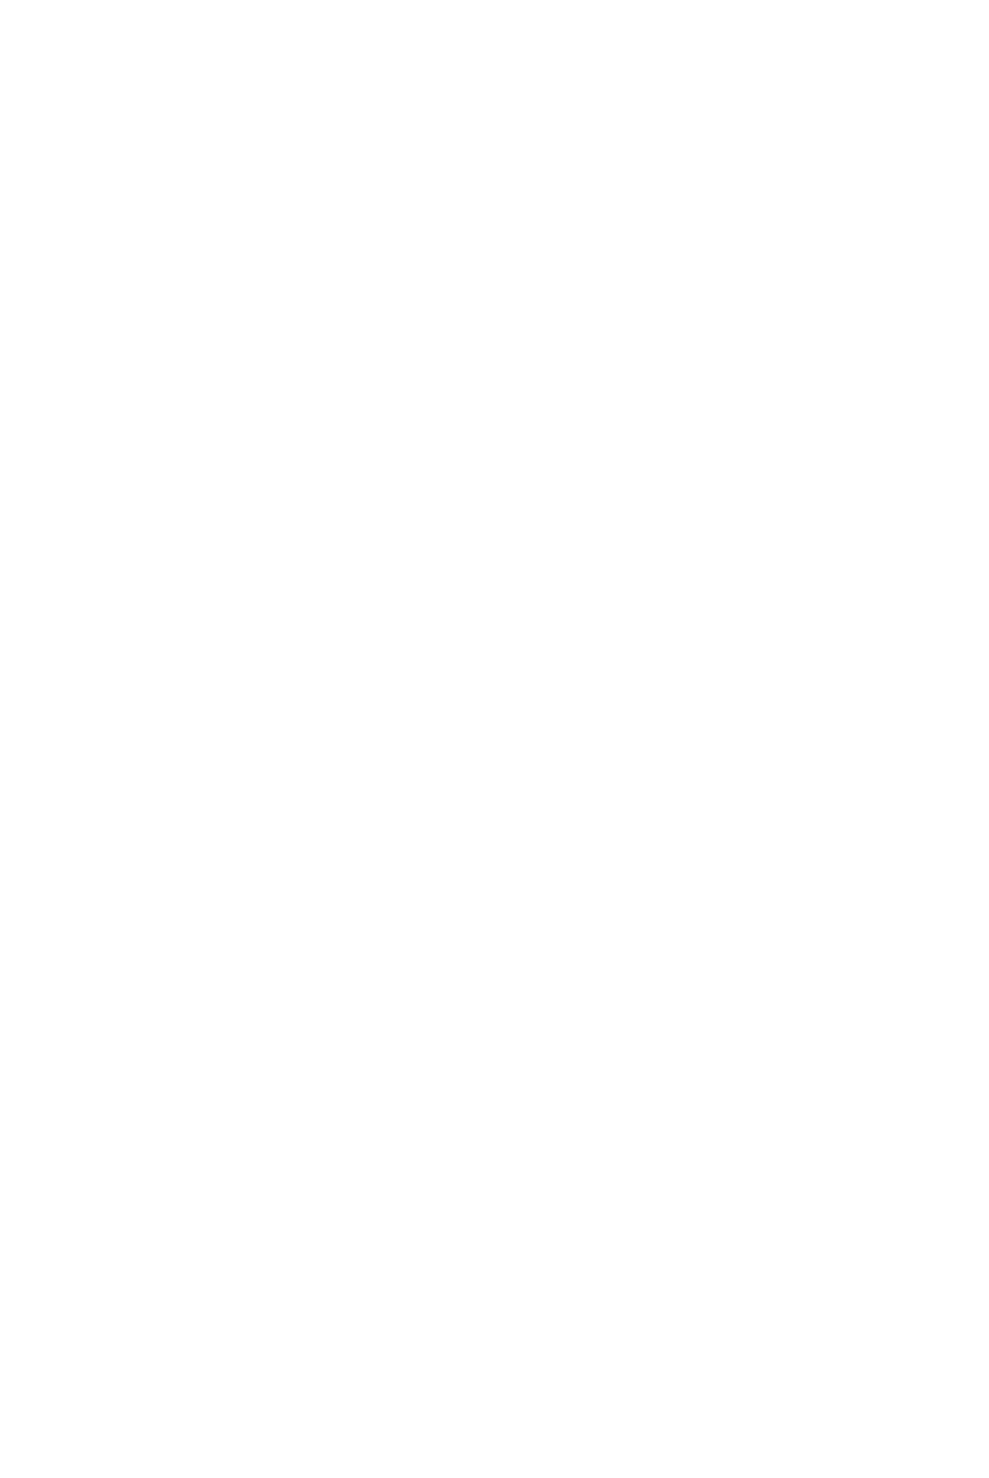 Hello Alice Small Business Mastercard®